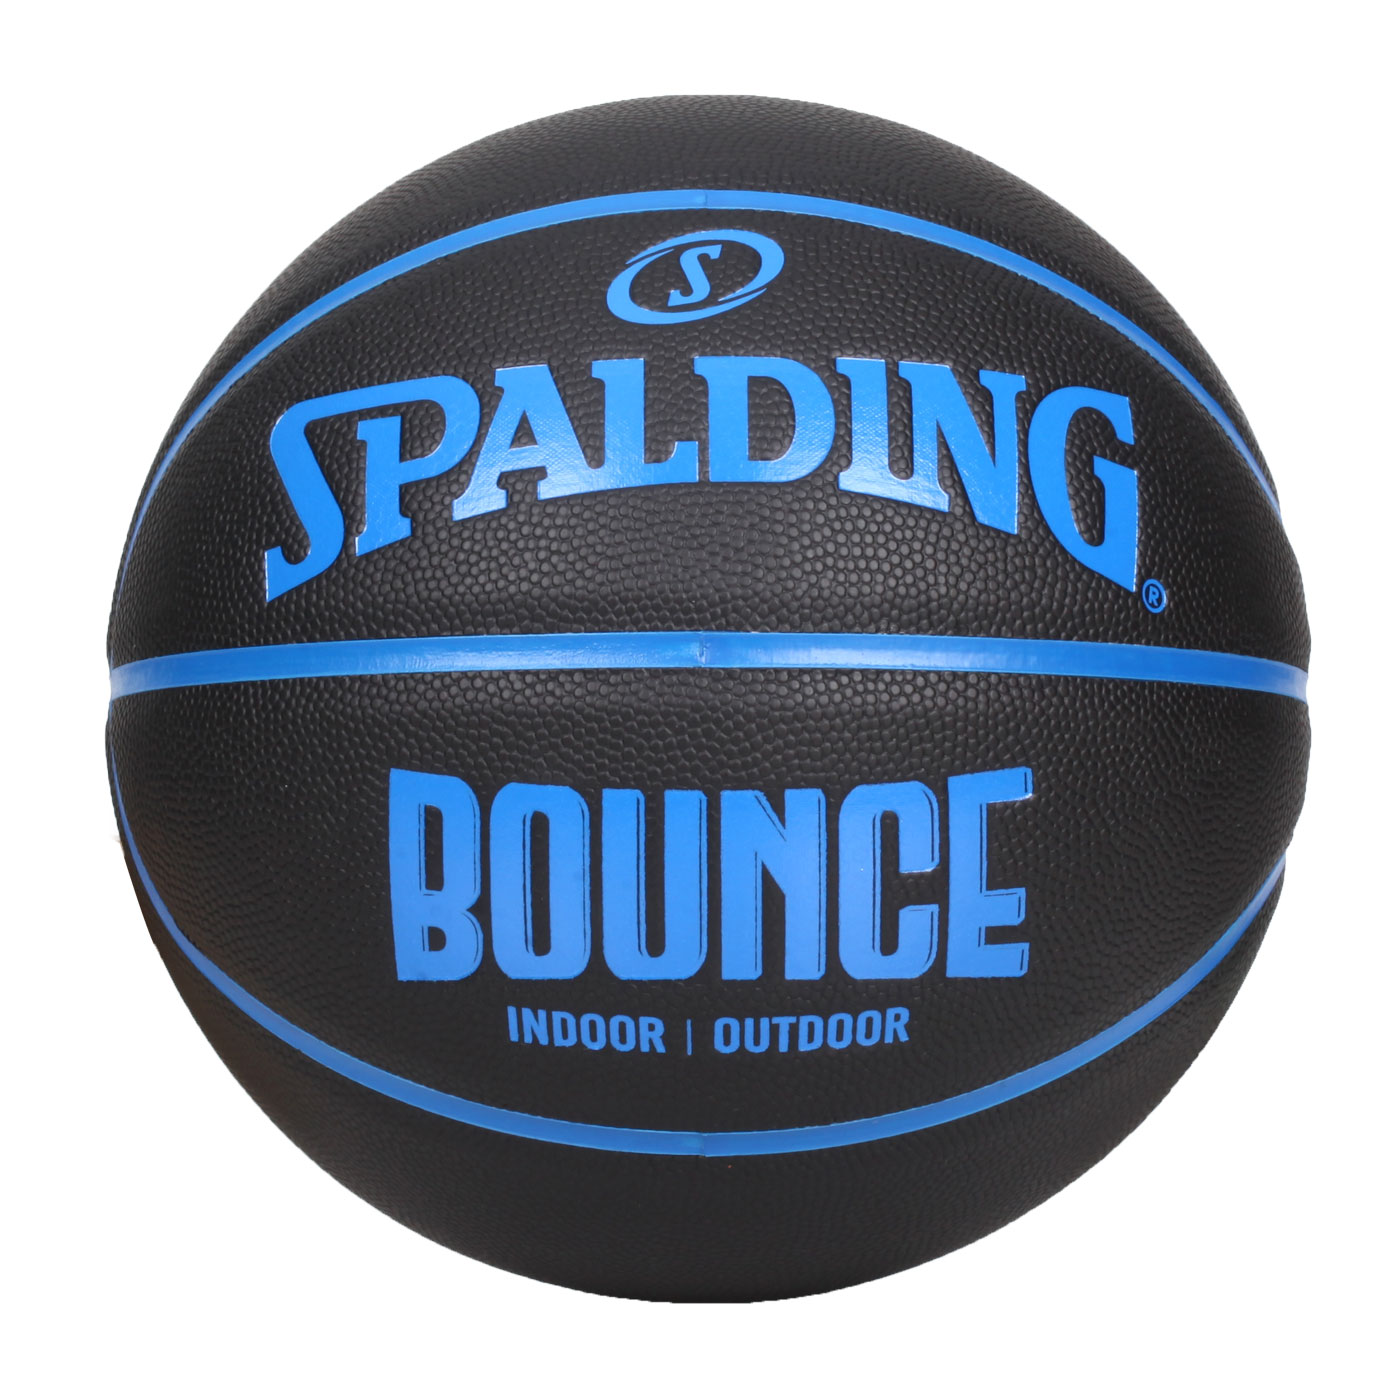 SPALDING Bounce 籃球-PU SPB91004 - 黑藍